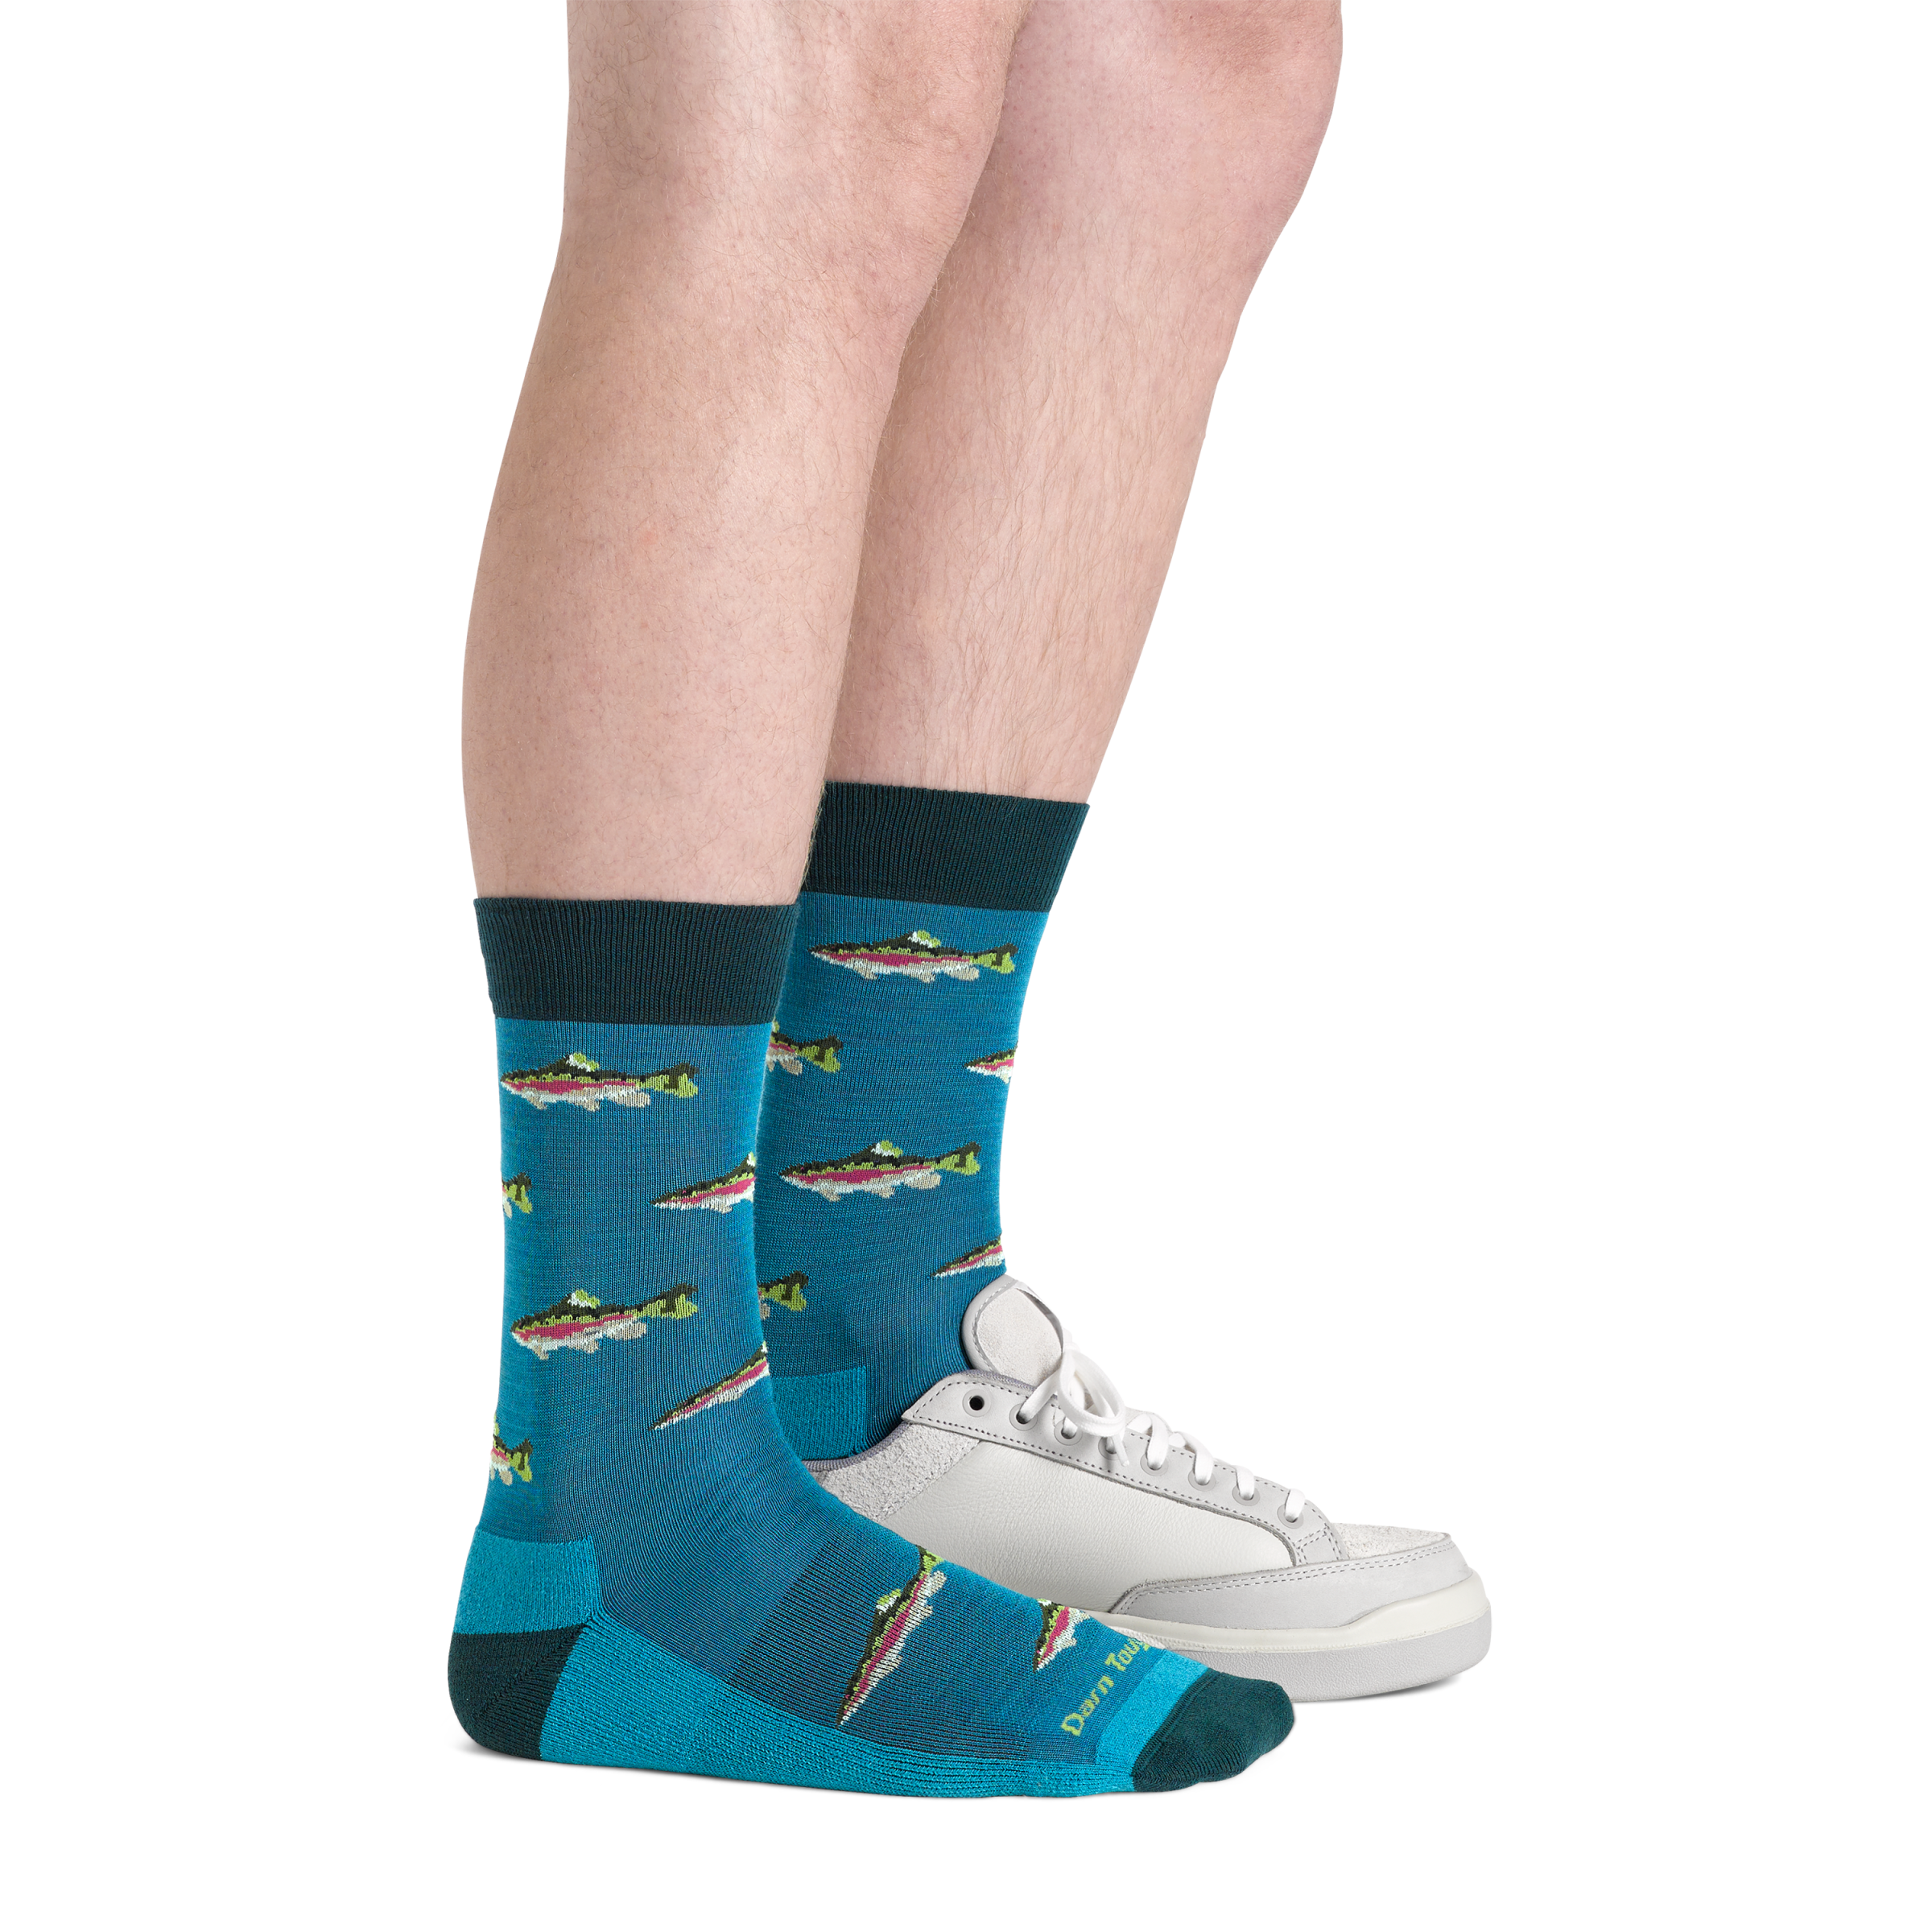 6085 men's cascade blue spey fly fish socks on foot wearing sneaker